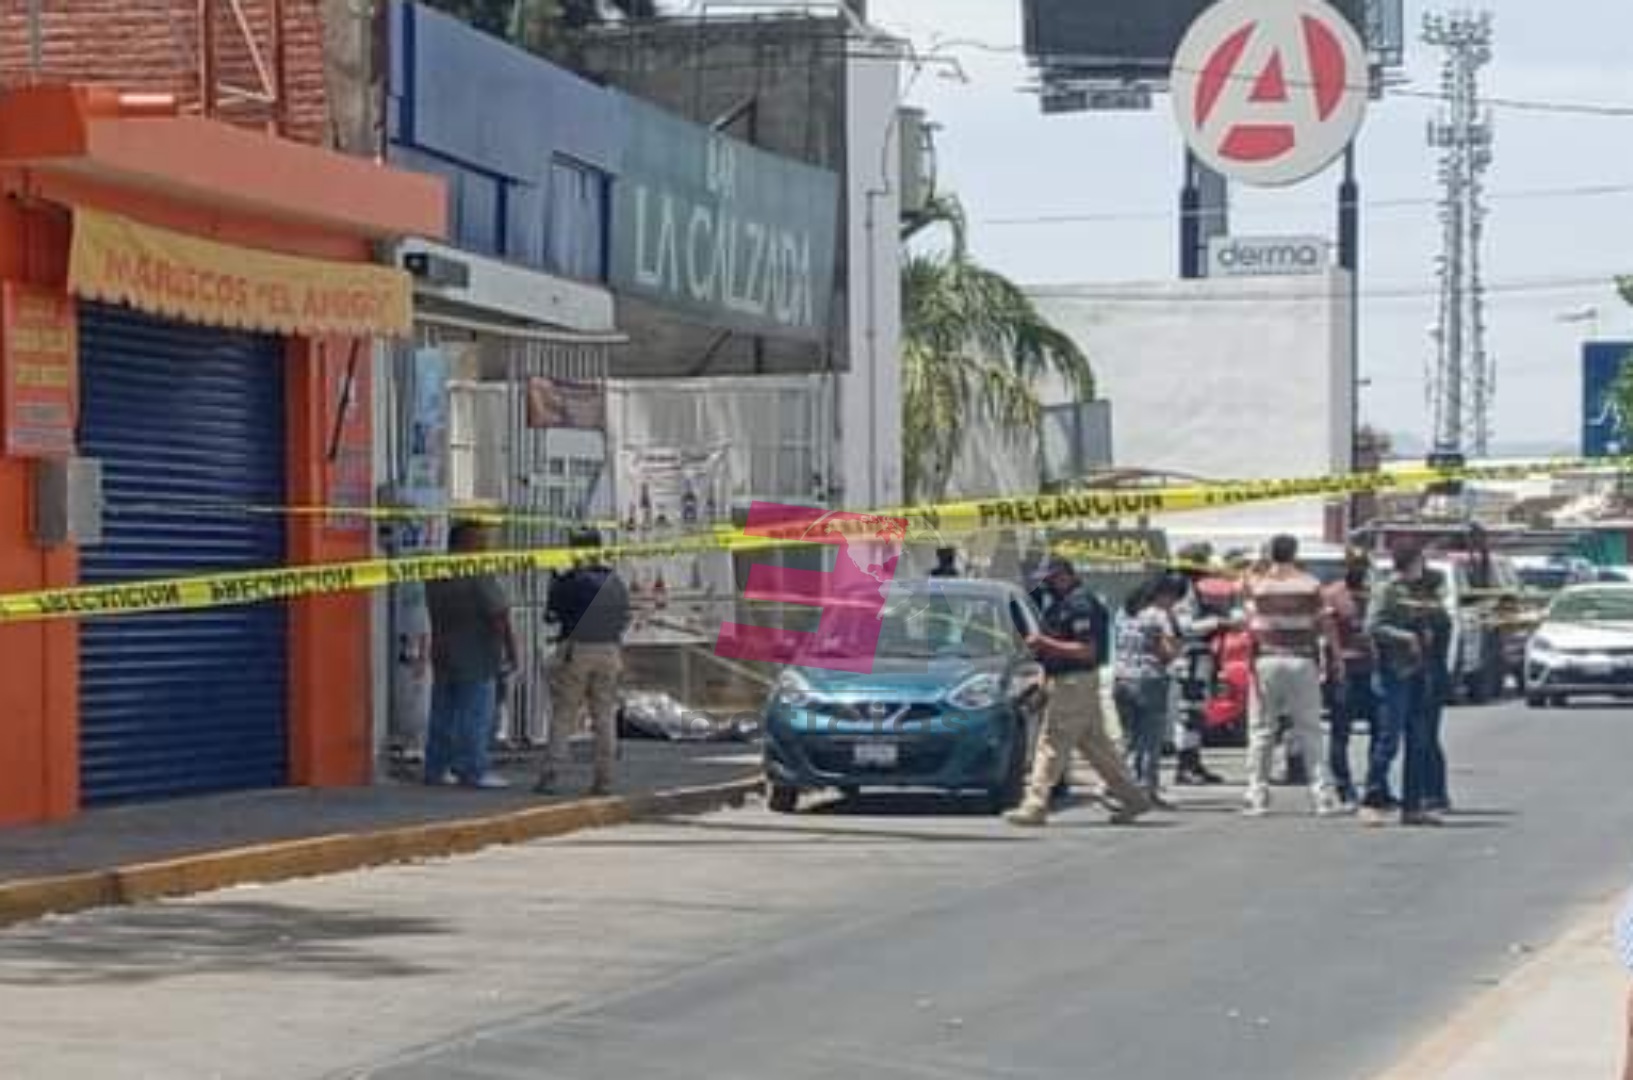 Ataque armado en bar "La Calzada" en Silao, dos muertos. 1